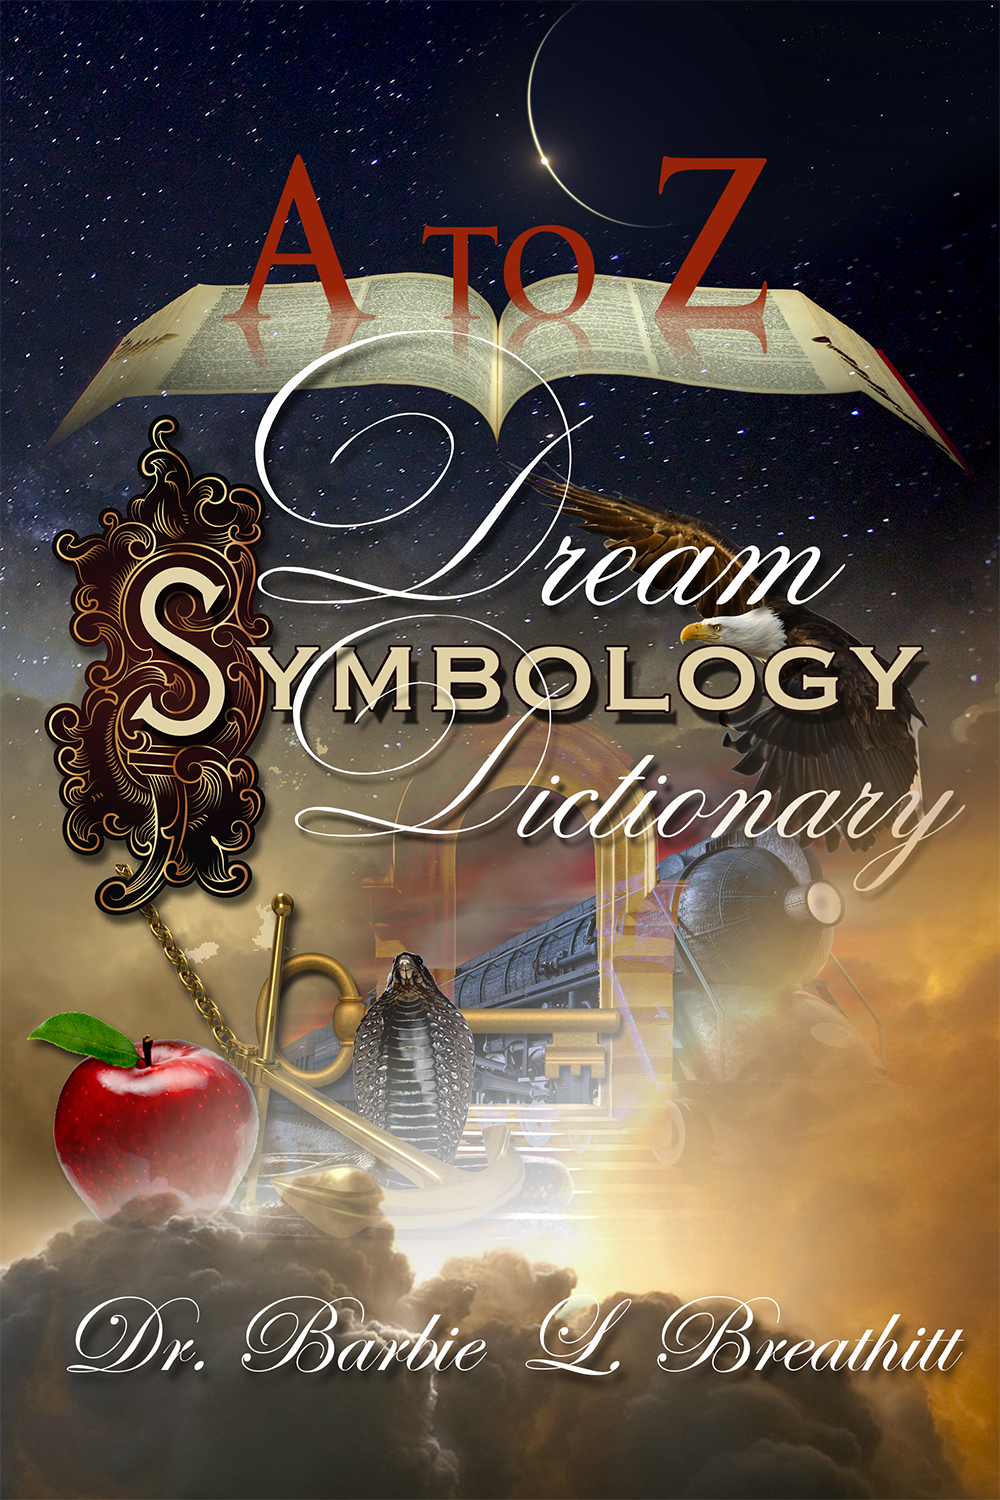 A to Z Dream Symbology web.jpg